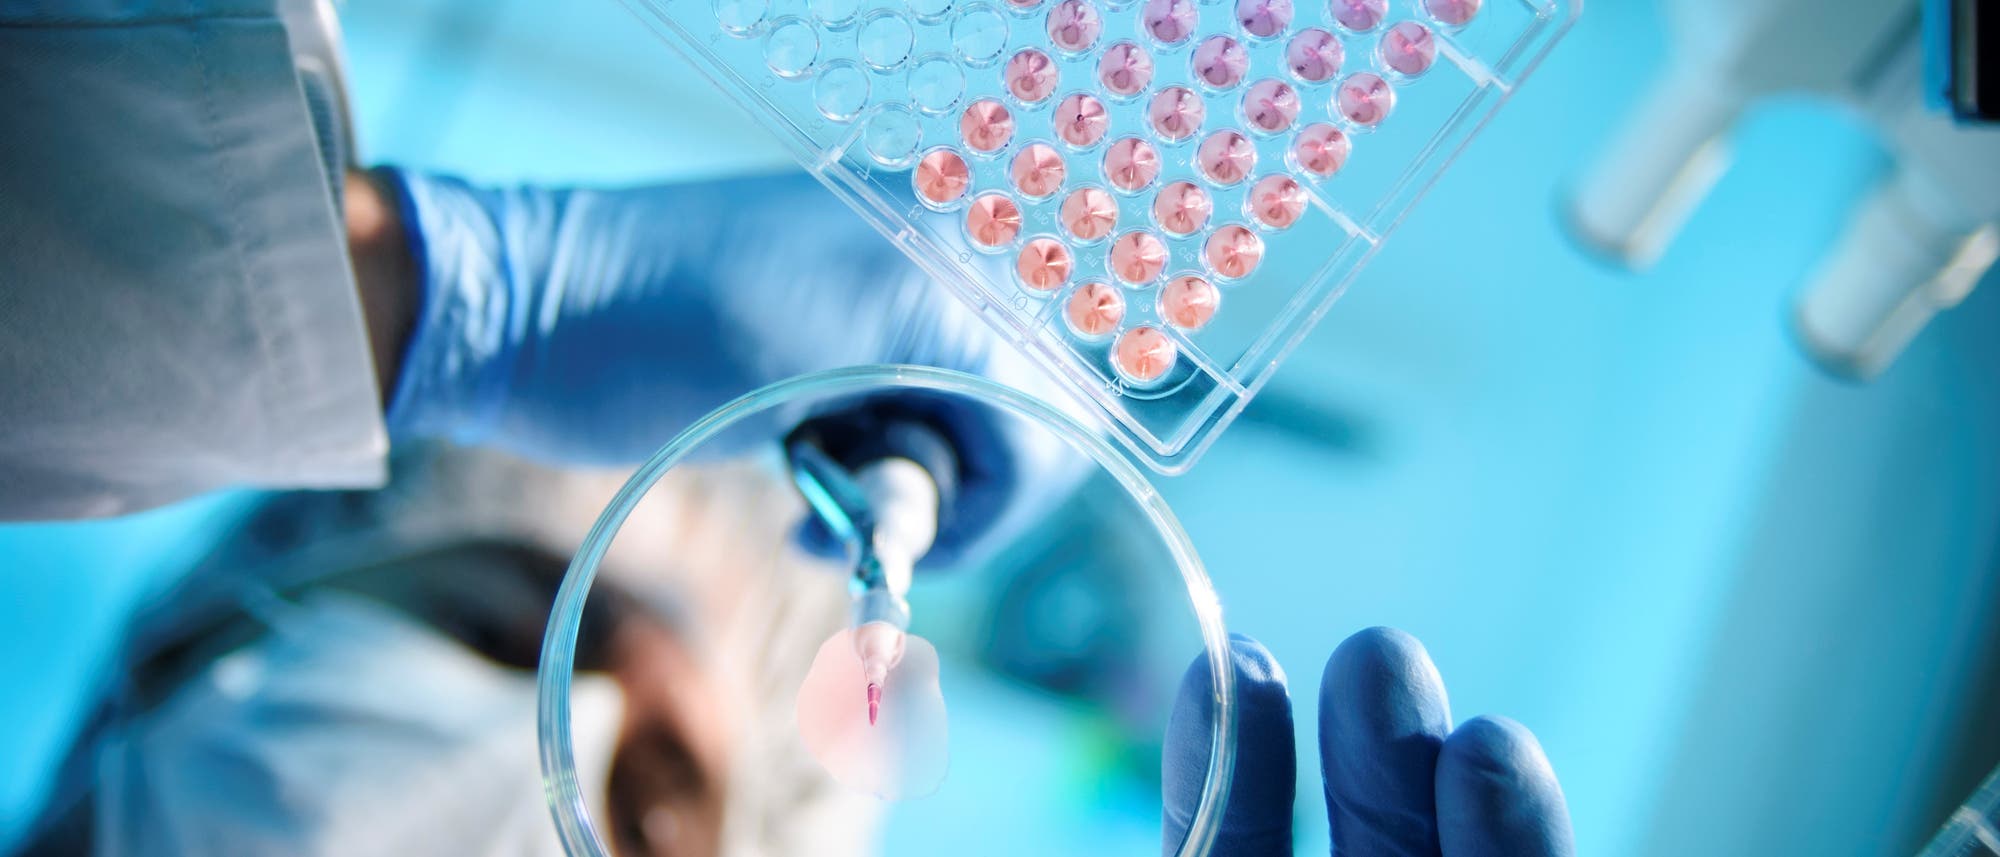 Um neue Medikamente zu entwickeln, sind viele Labortests notwendig